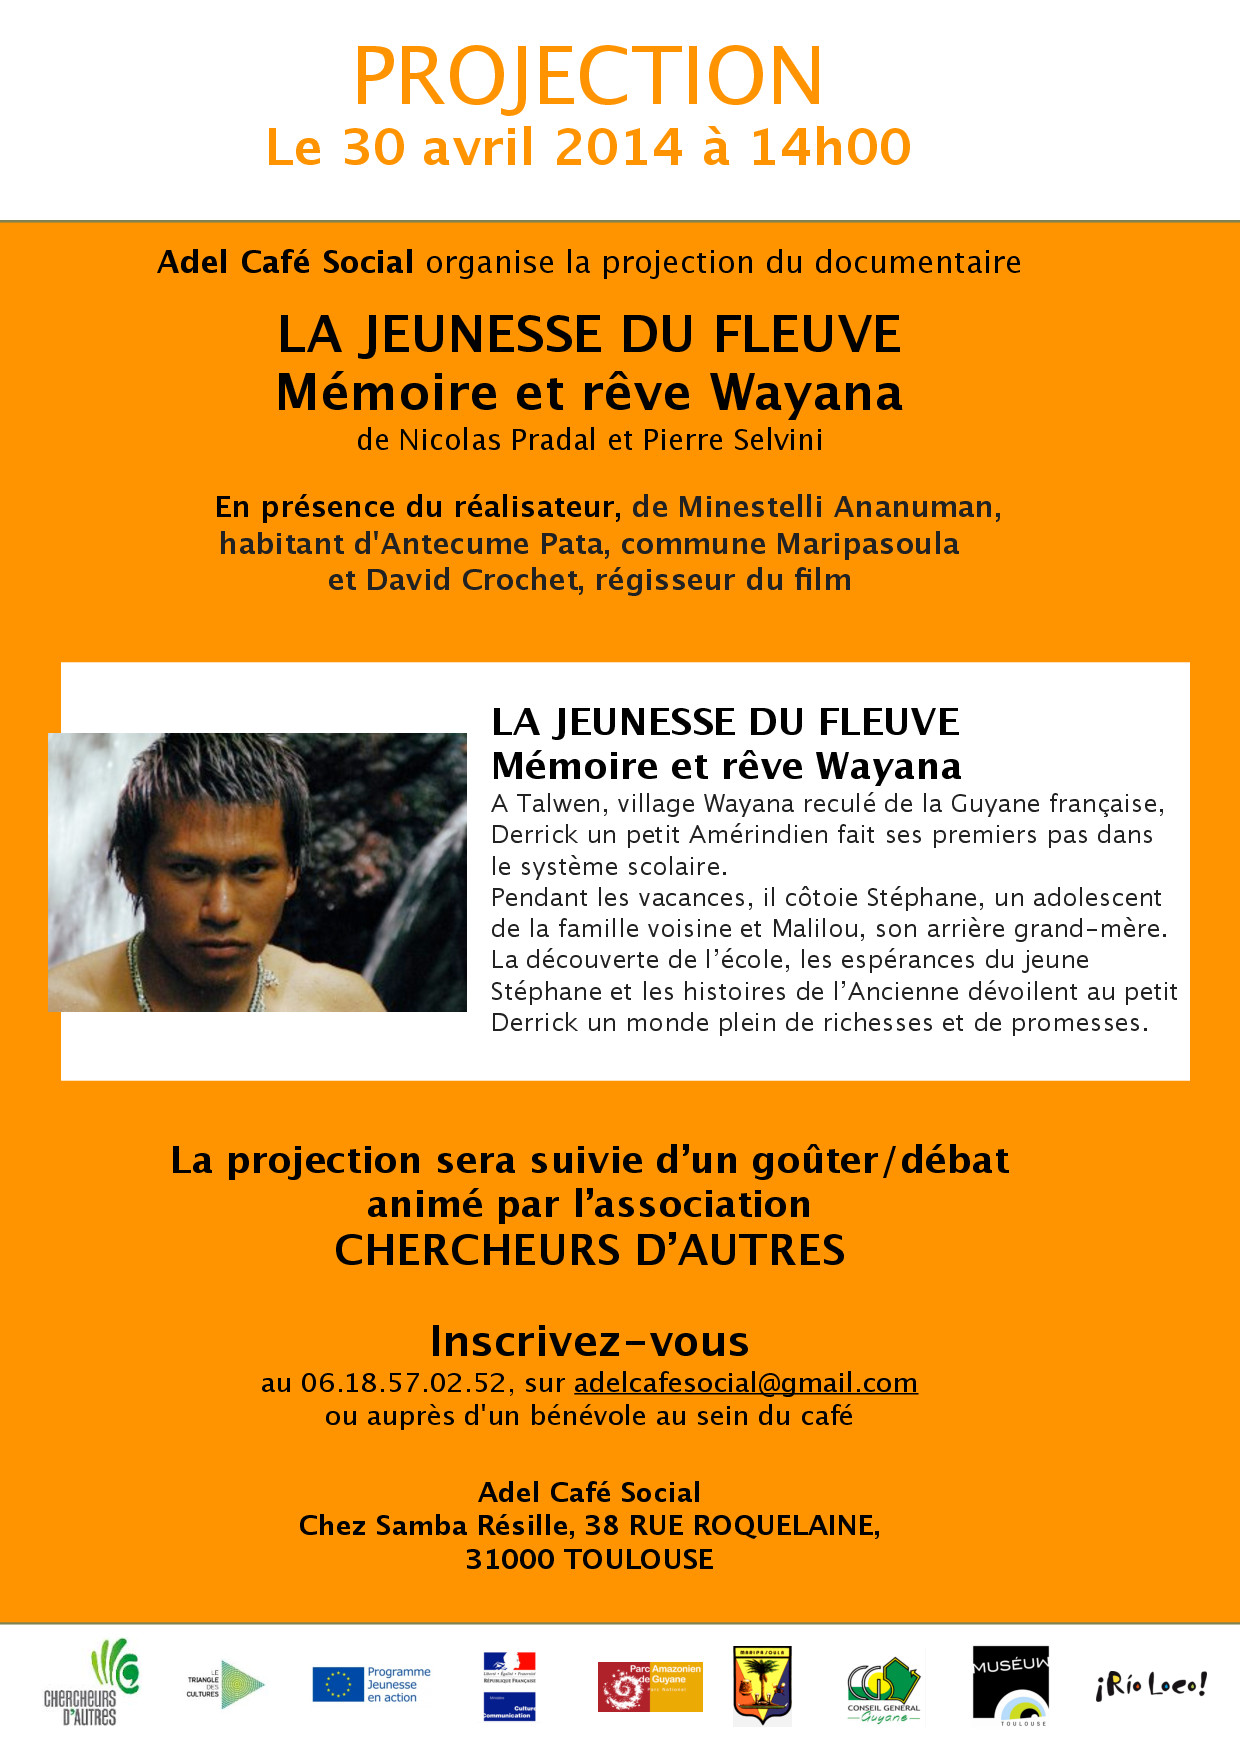 Lire la suite à propos de l’article Projection « La jeunesse du Fleuve » à Adel Café Social 30 avril 14h